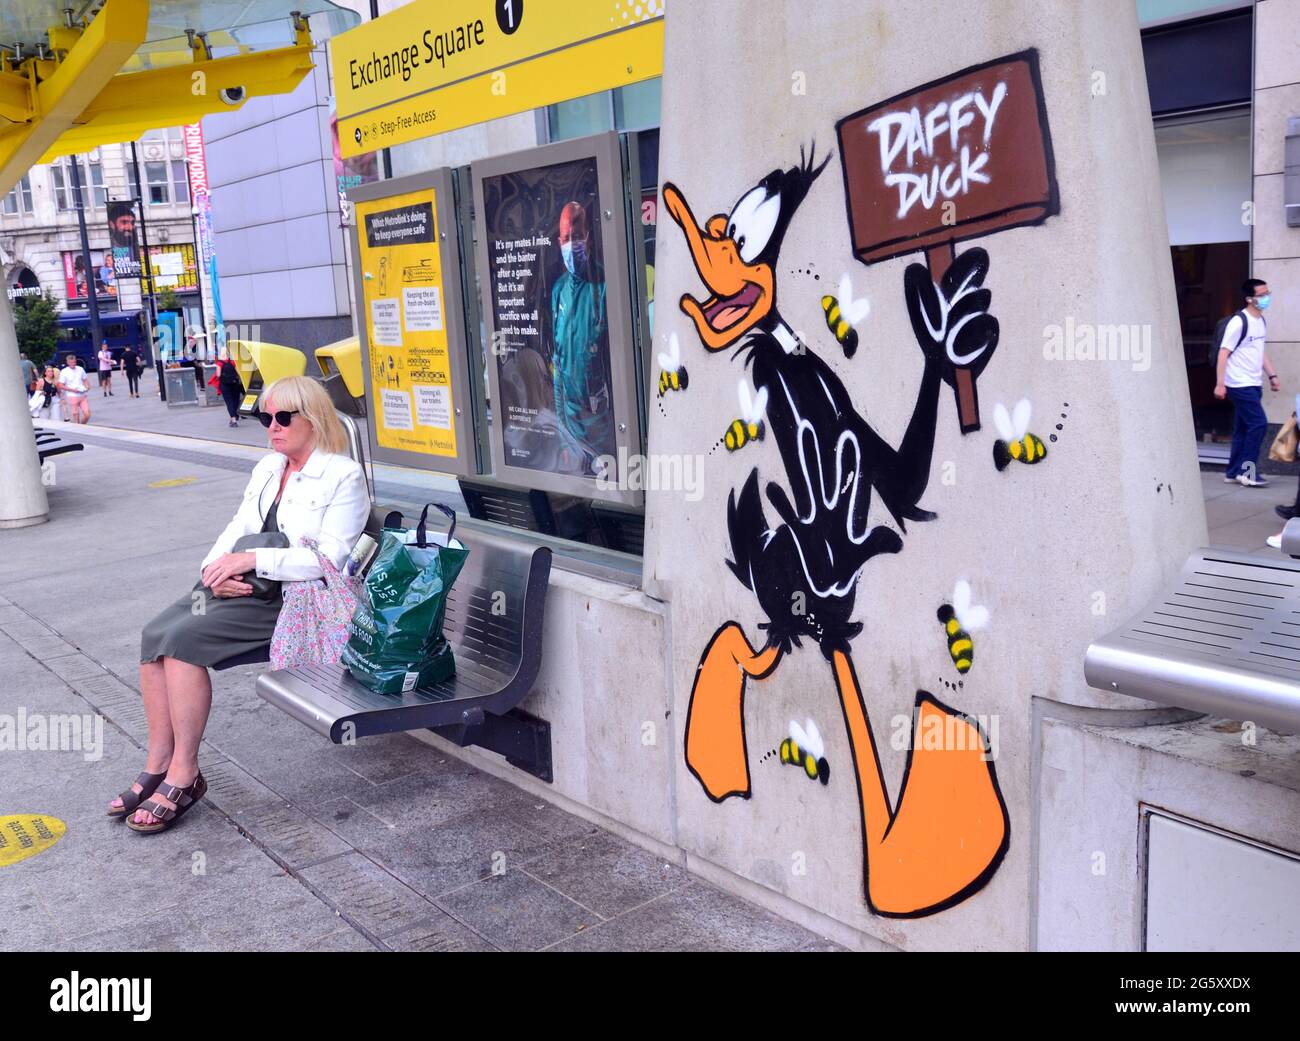 Une femme se trouve à côté d'une image du personnage de dessin animé de Daffy Duck, qui fait partie d'un sentier d'art de Looney Tunes qui a ouvert à Manchester, en Angleterre. Banque D'Images